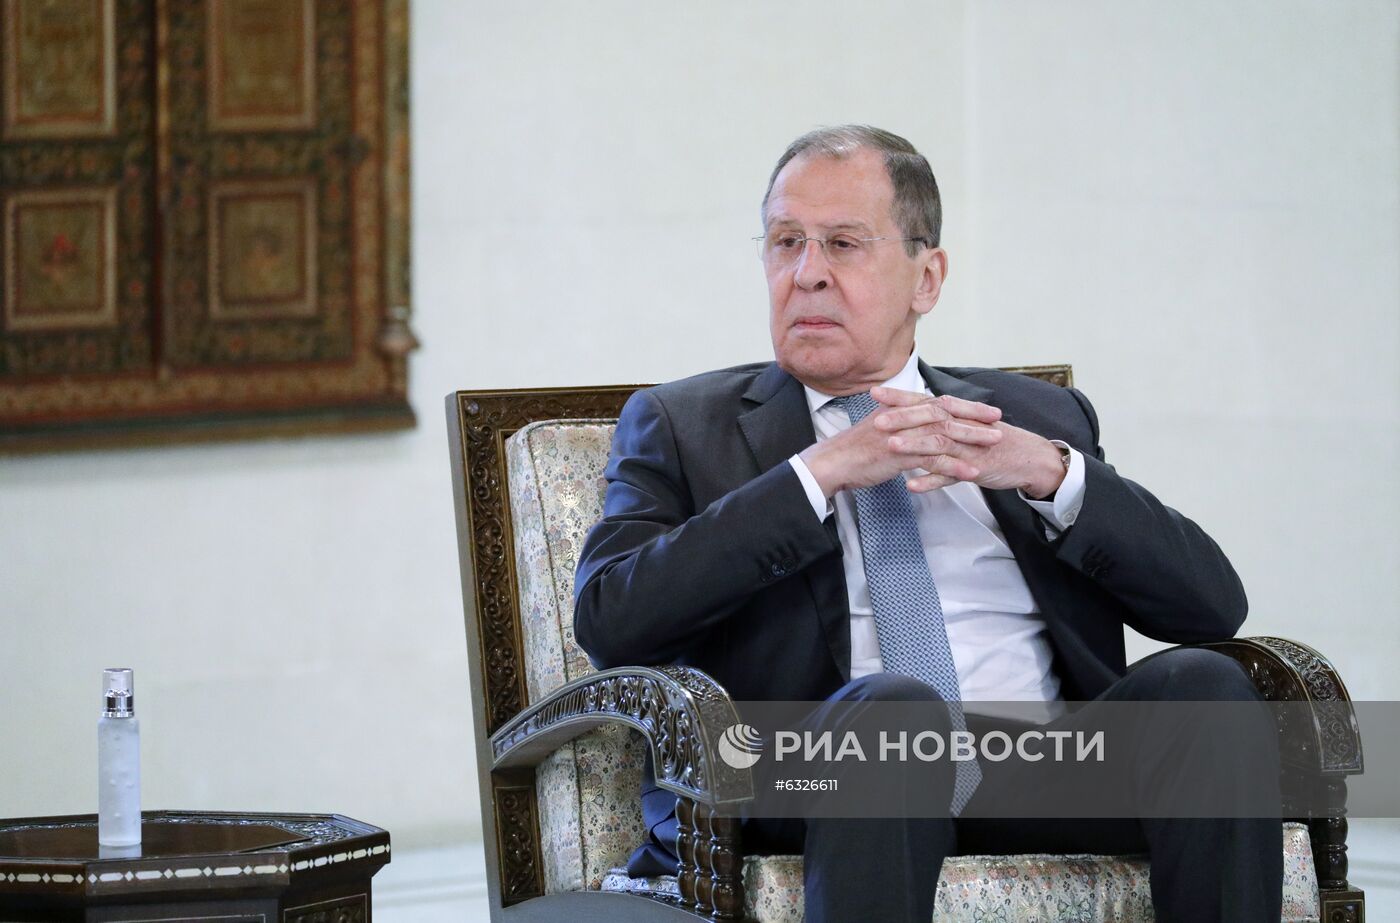 Визит министра иностранных дел РФ С. Лаврова в Сирию